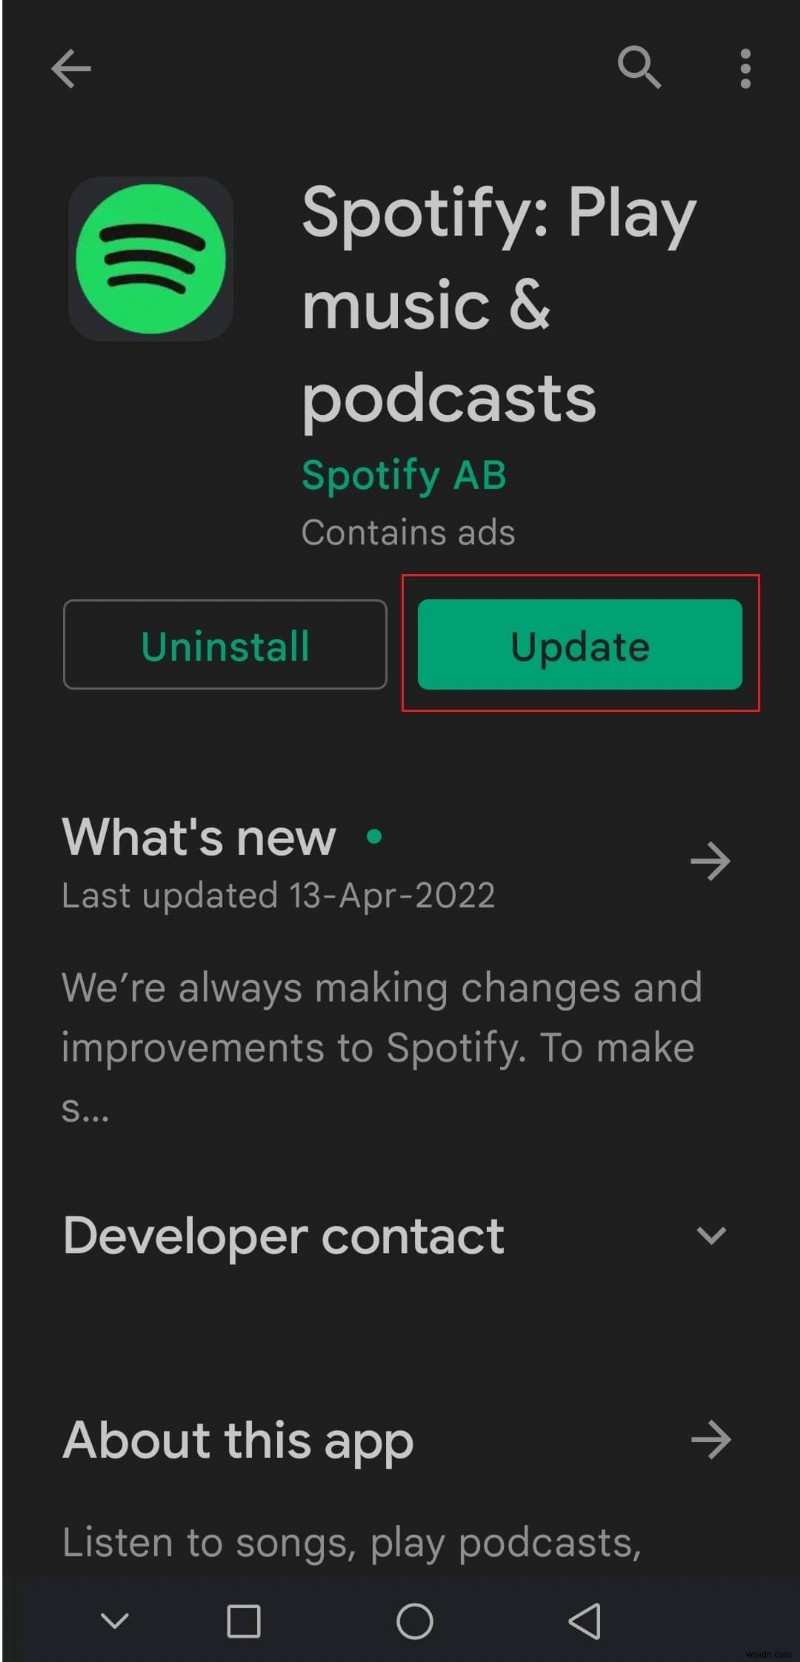 Khắc phục sự cố Spotify được bọc không hoạt động